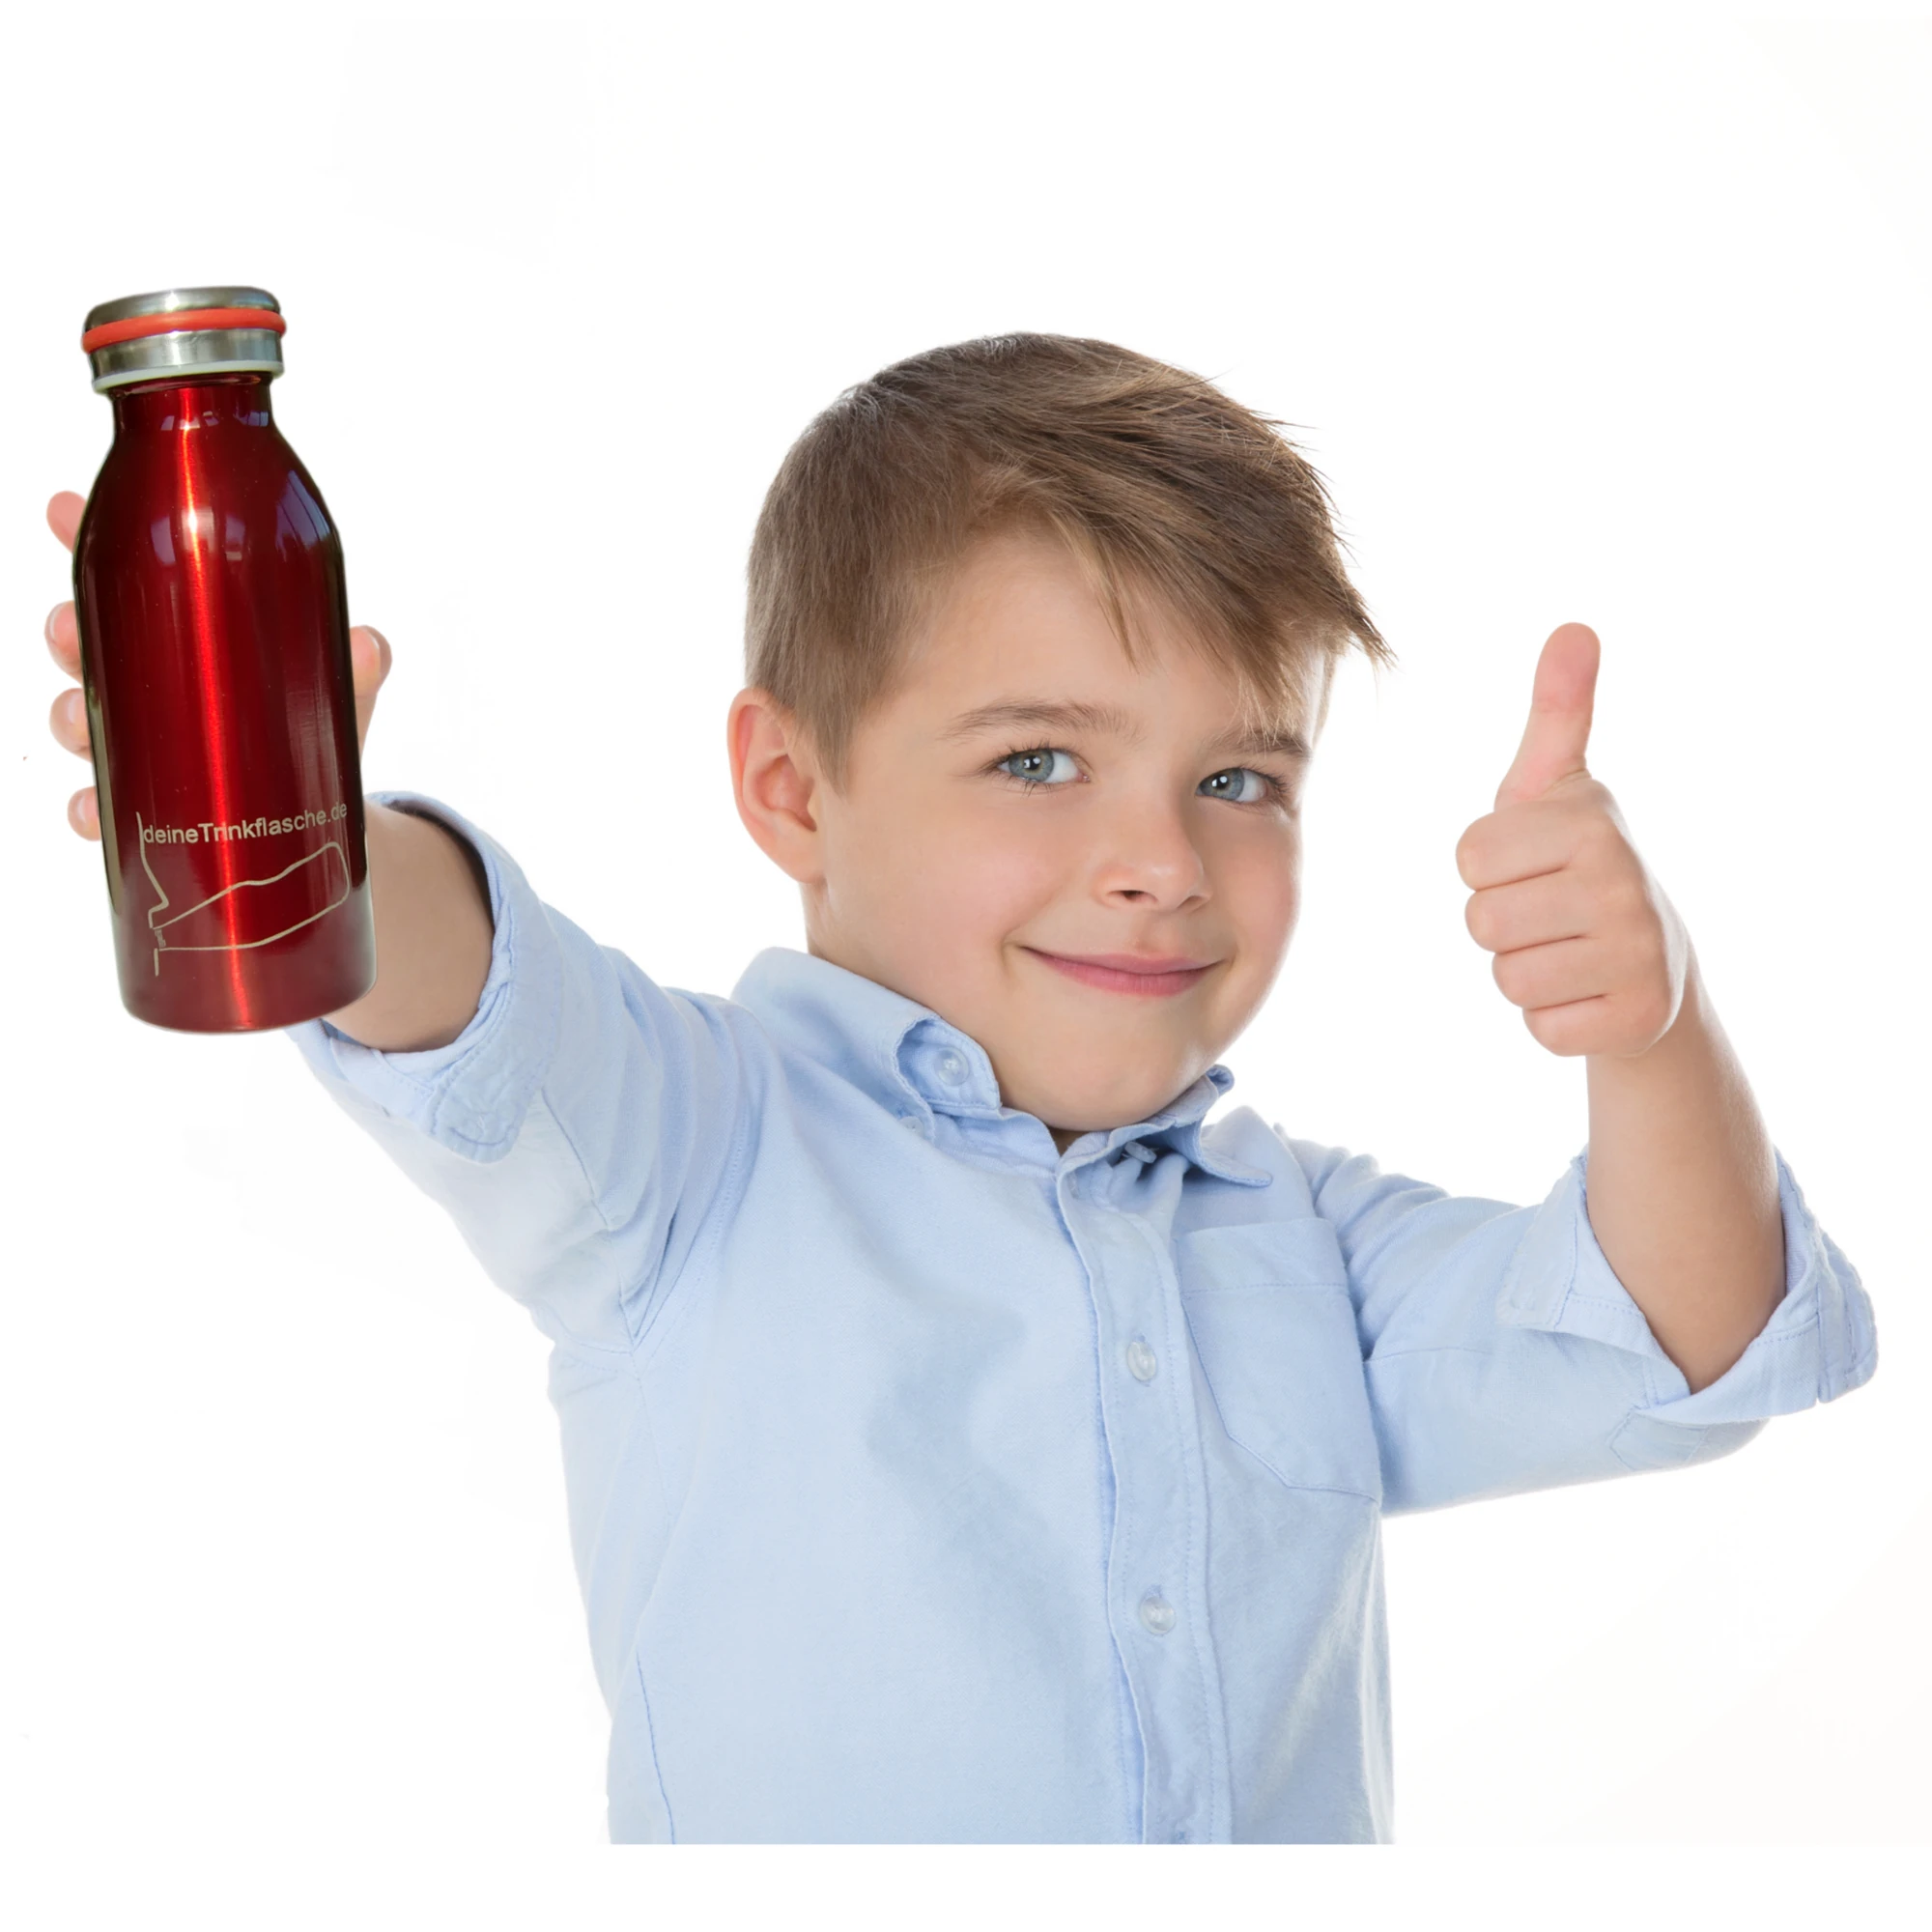 Ein dunkelblonder Junge mit hellblauem Hemd streckt eine rote Thermosfflasche lächelnd in richtung Kamera